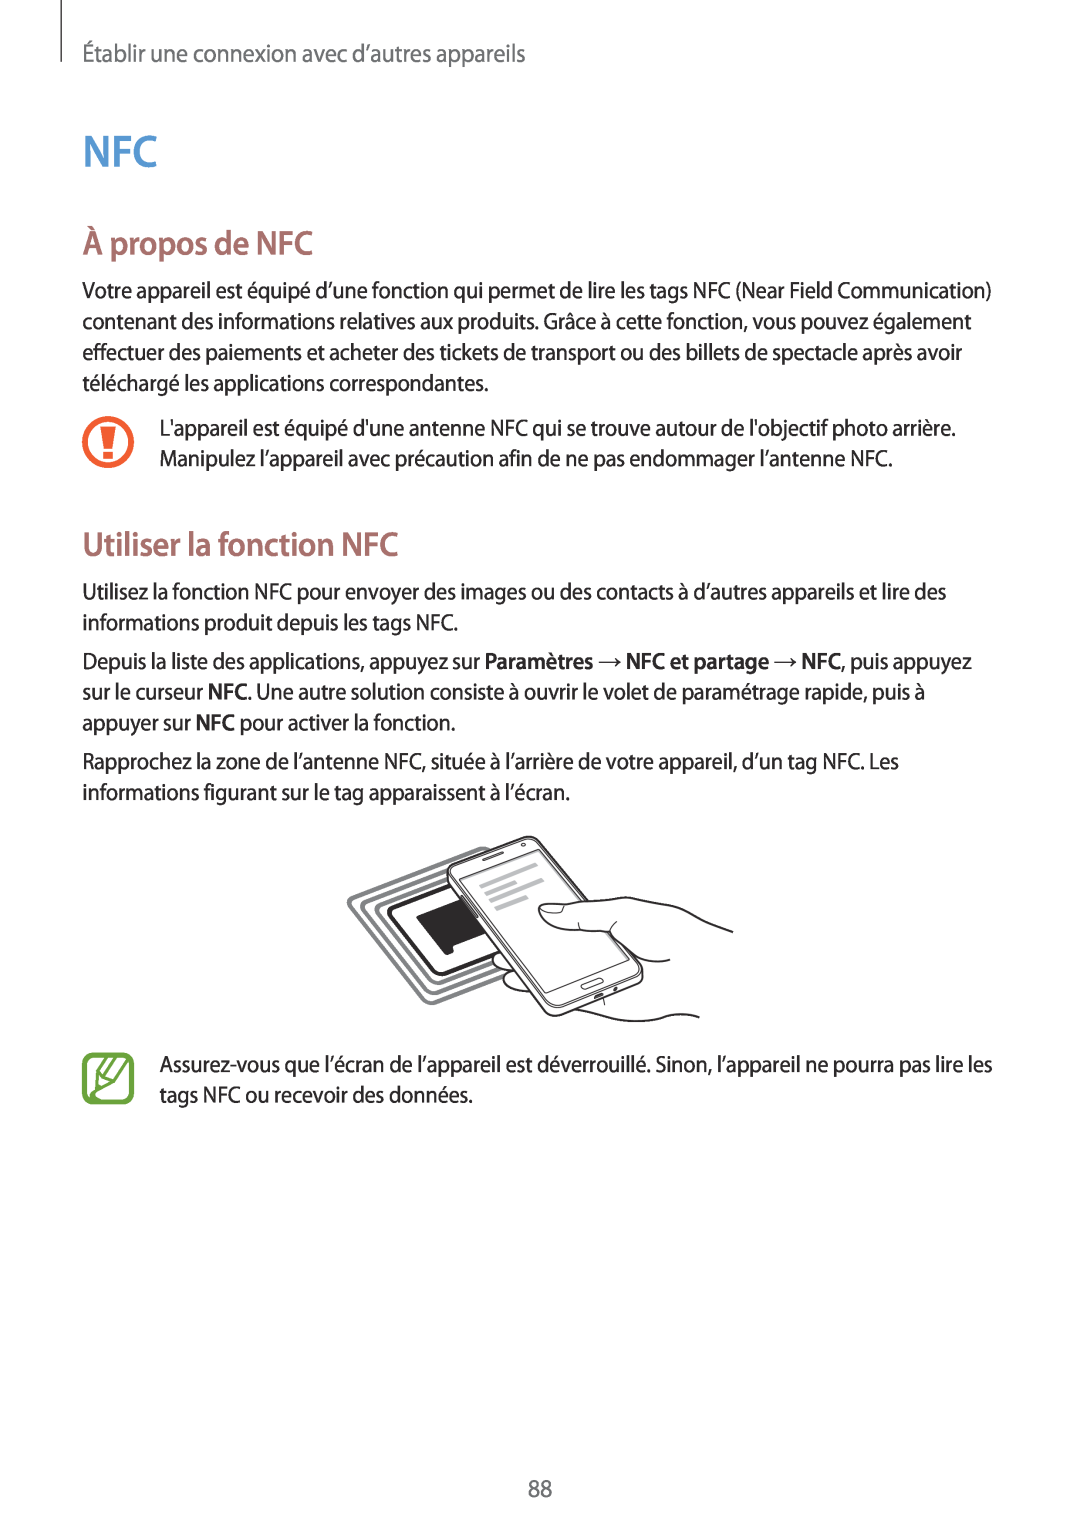 Samsung SM-A300FZKUSFR manual À propos de NFC, Utiliser la fonction NFC, Établir une connexion avec d’autres appareils 